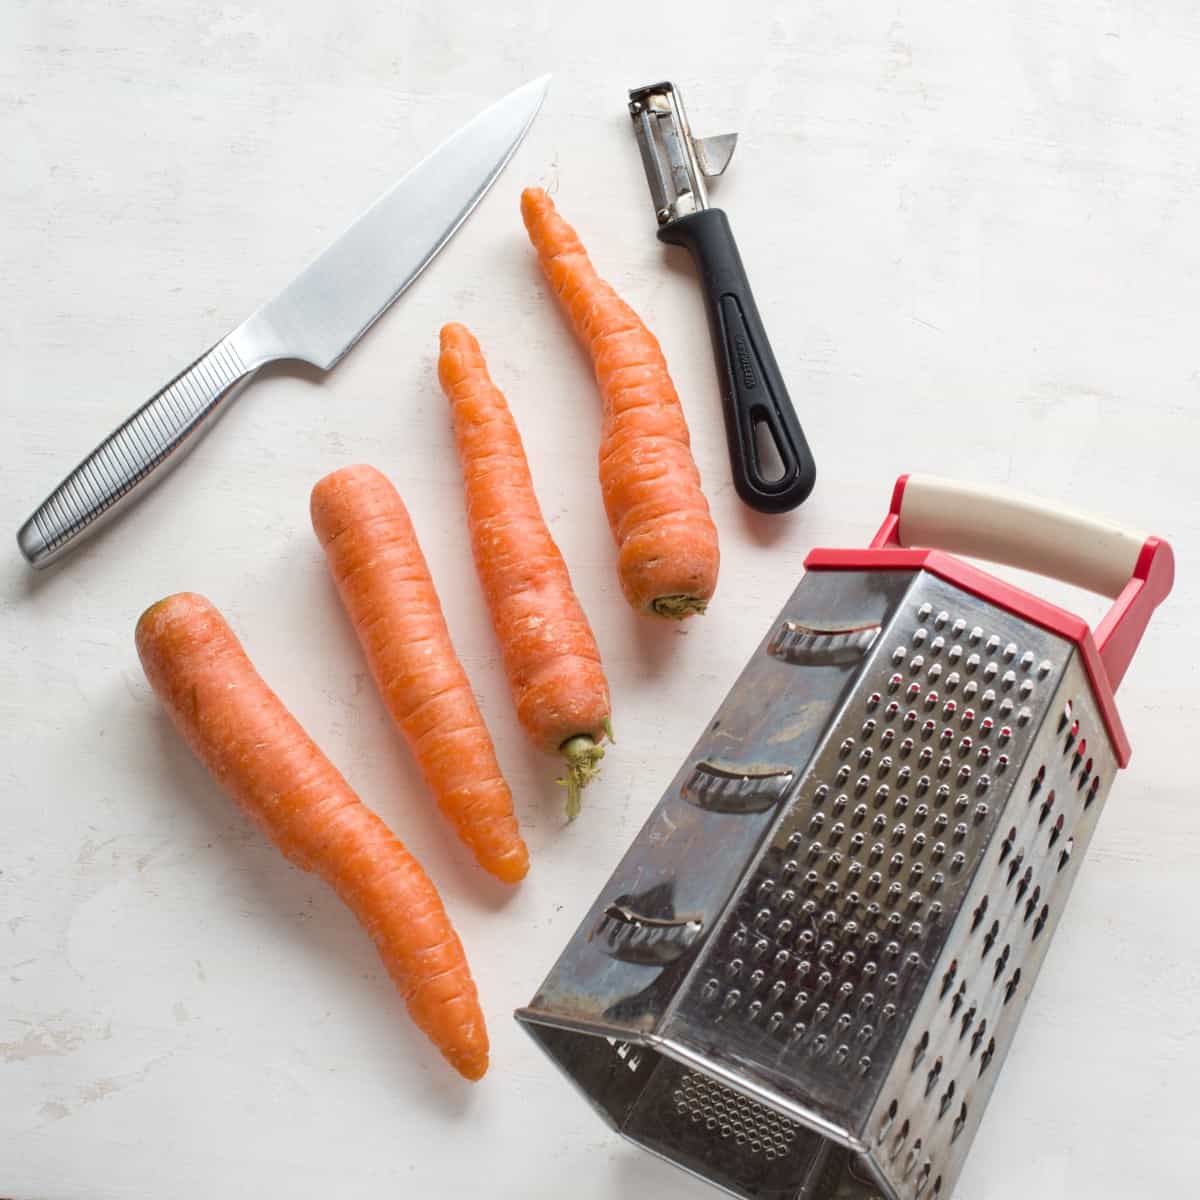 Co je potřeba ke strouhání mrkve: nůž, škrabka, struhadlo.